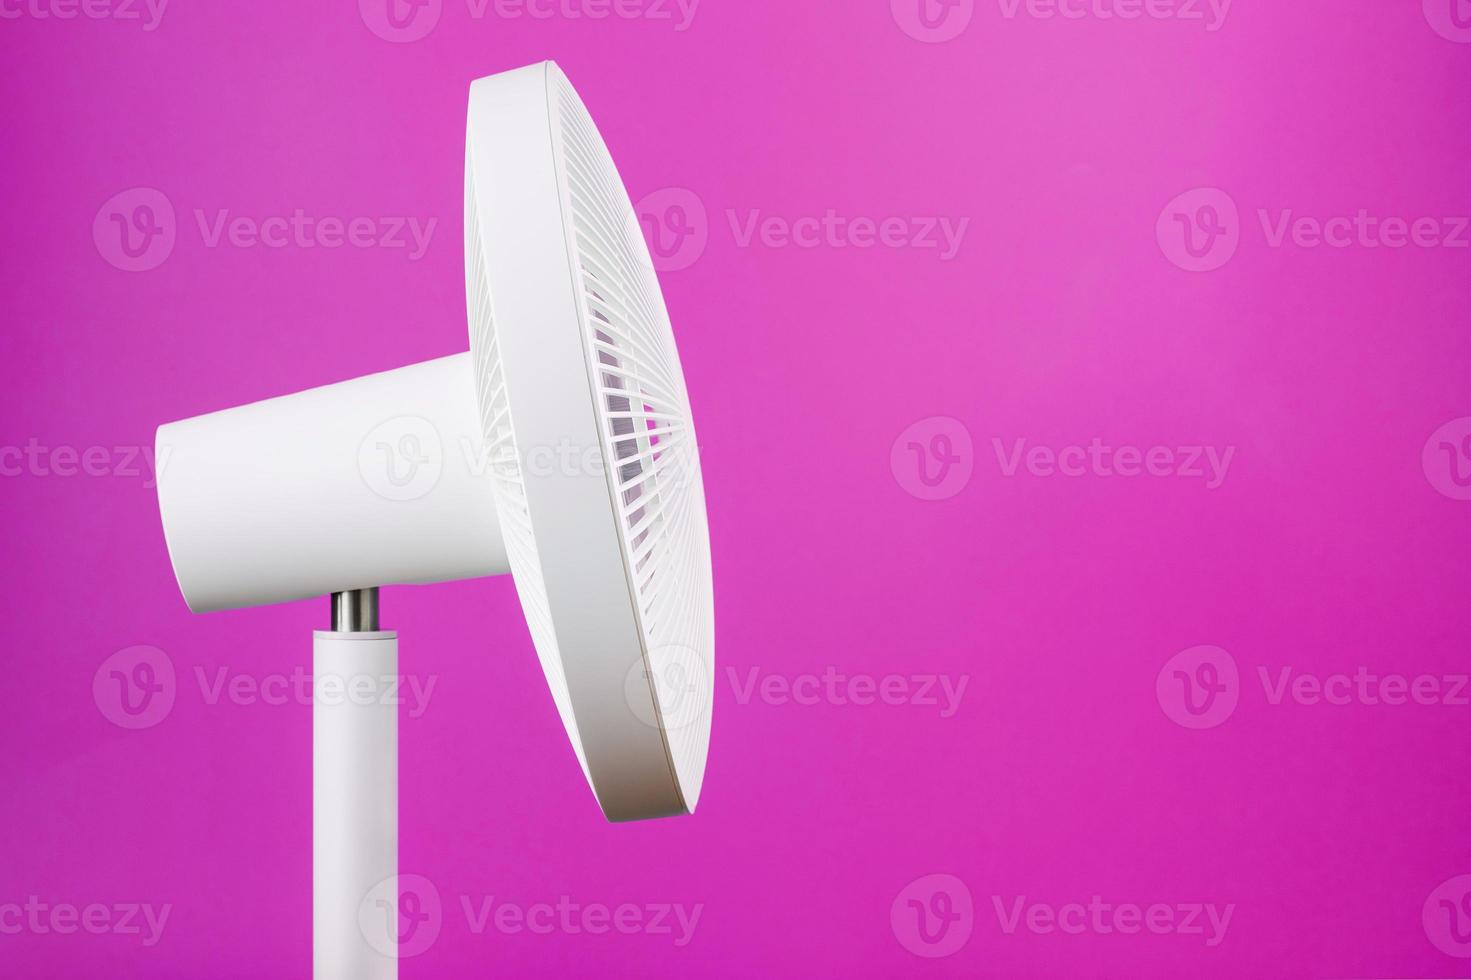 ventilador eléctrico moderno blanco para enfriar la habitación sobre un fondo rosa. foto